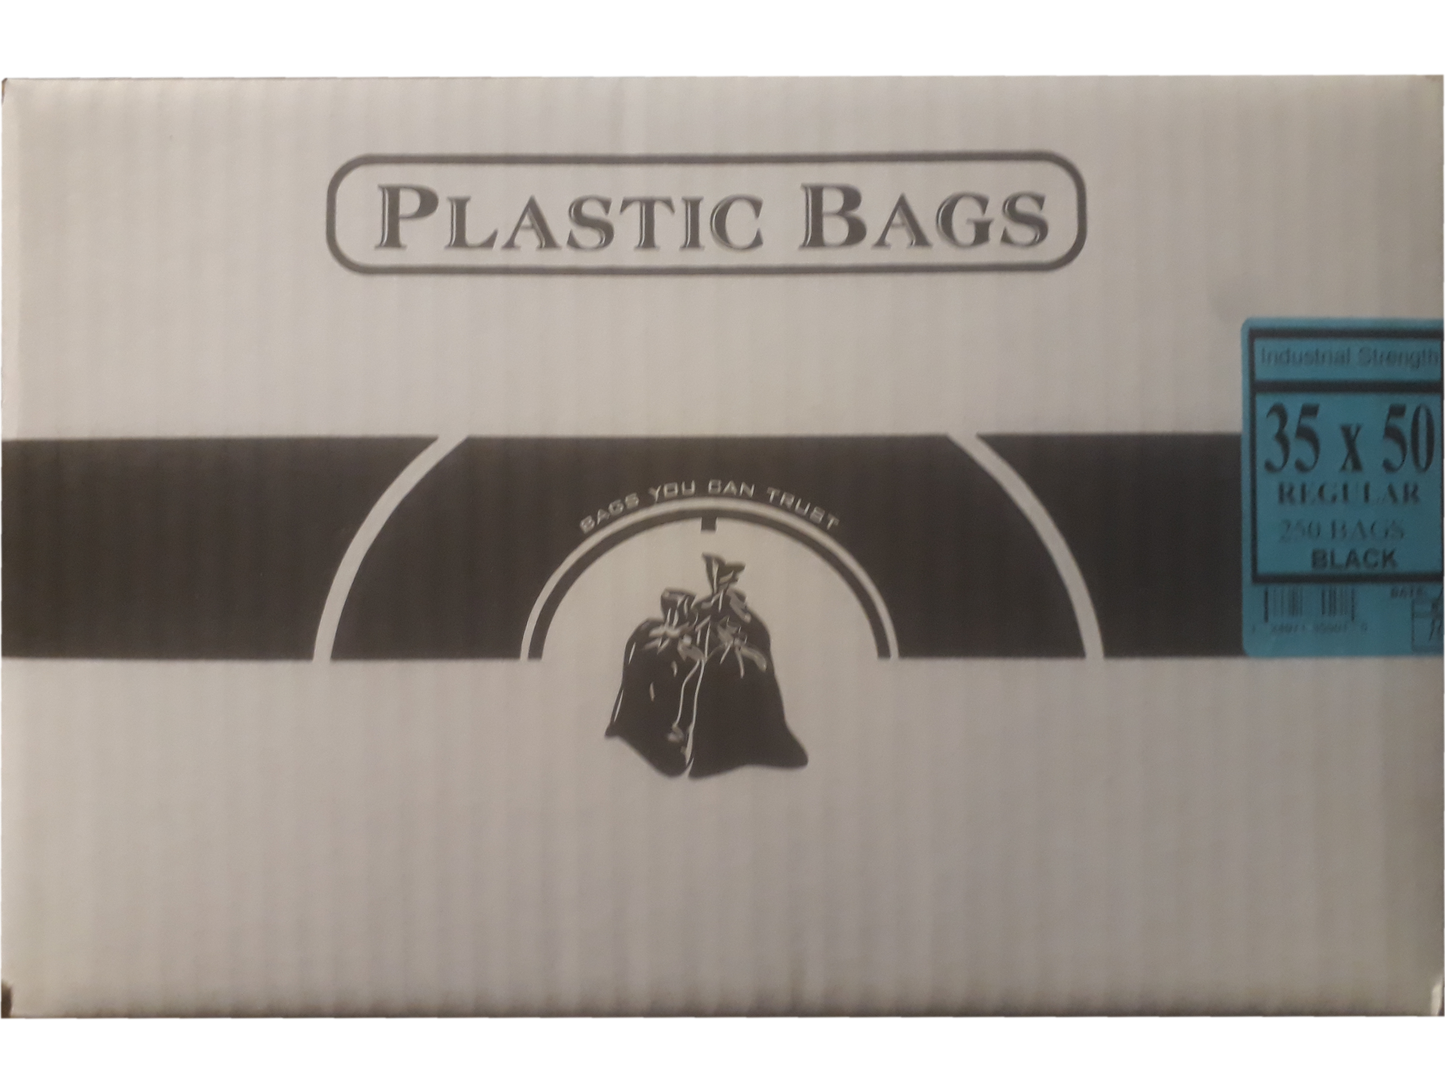 35"x50" Industrial Regular Black Garbage/Trash Bags - 250/CS